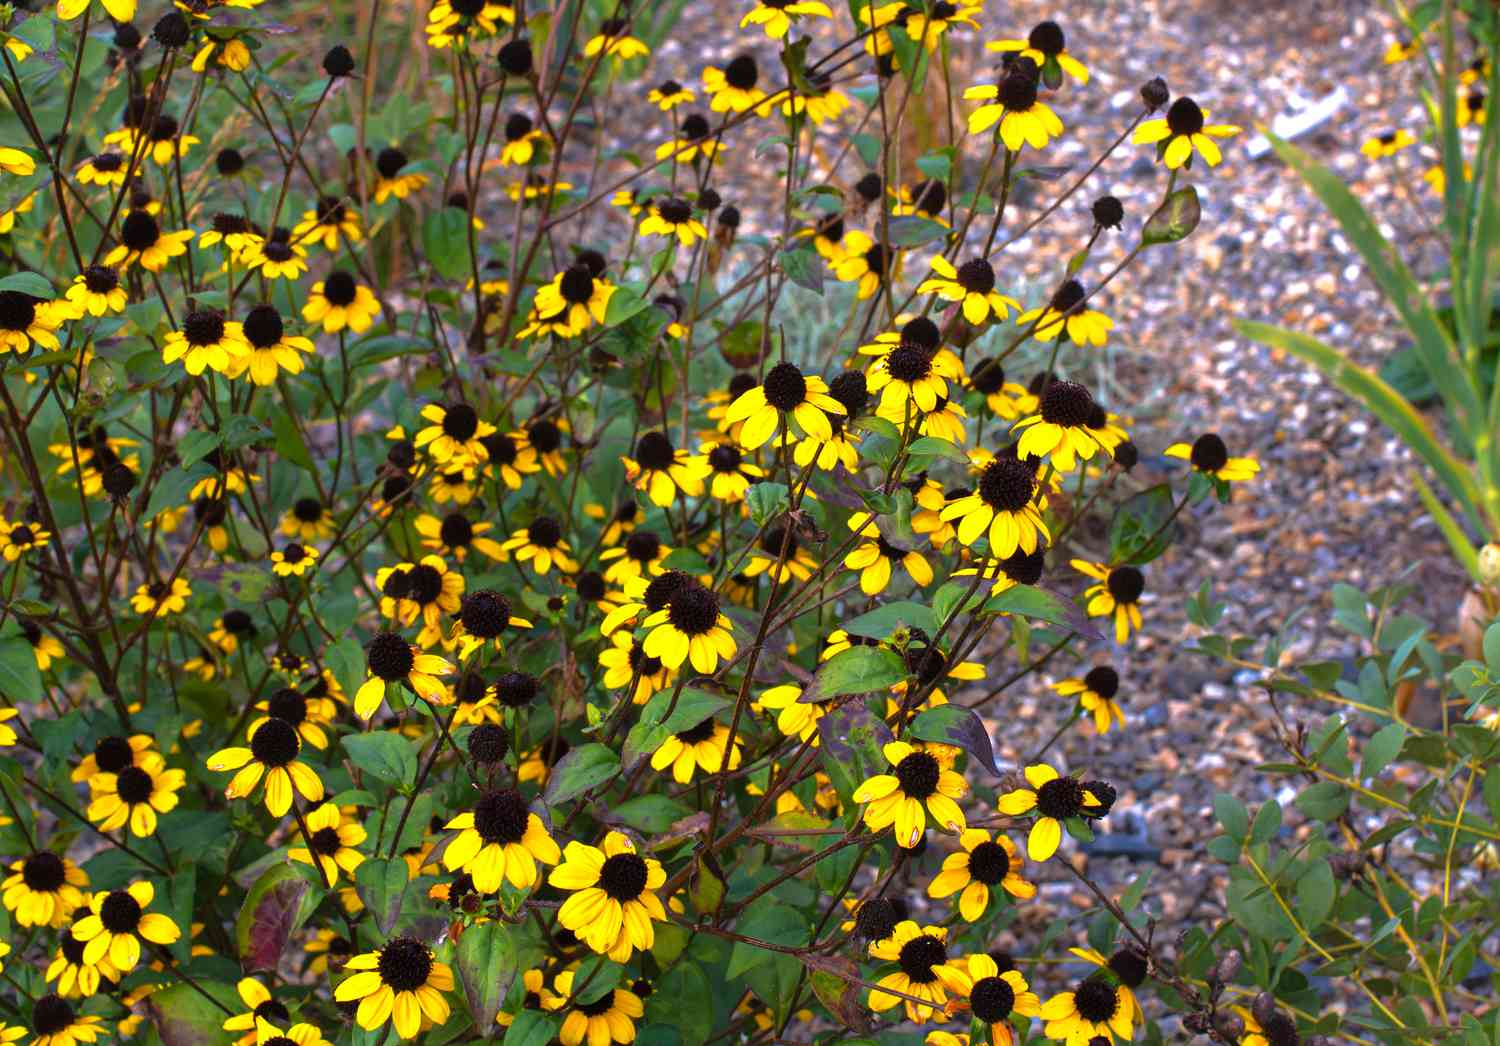 Braunäugige Susan-Wildblumen mit leuchtend gelben Blüten und braunen runden Zentren auf dünnen Stängeln in Nahaufnahme